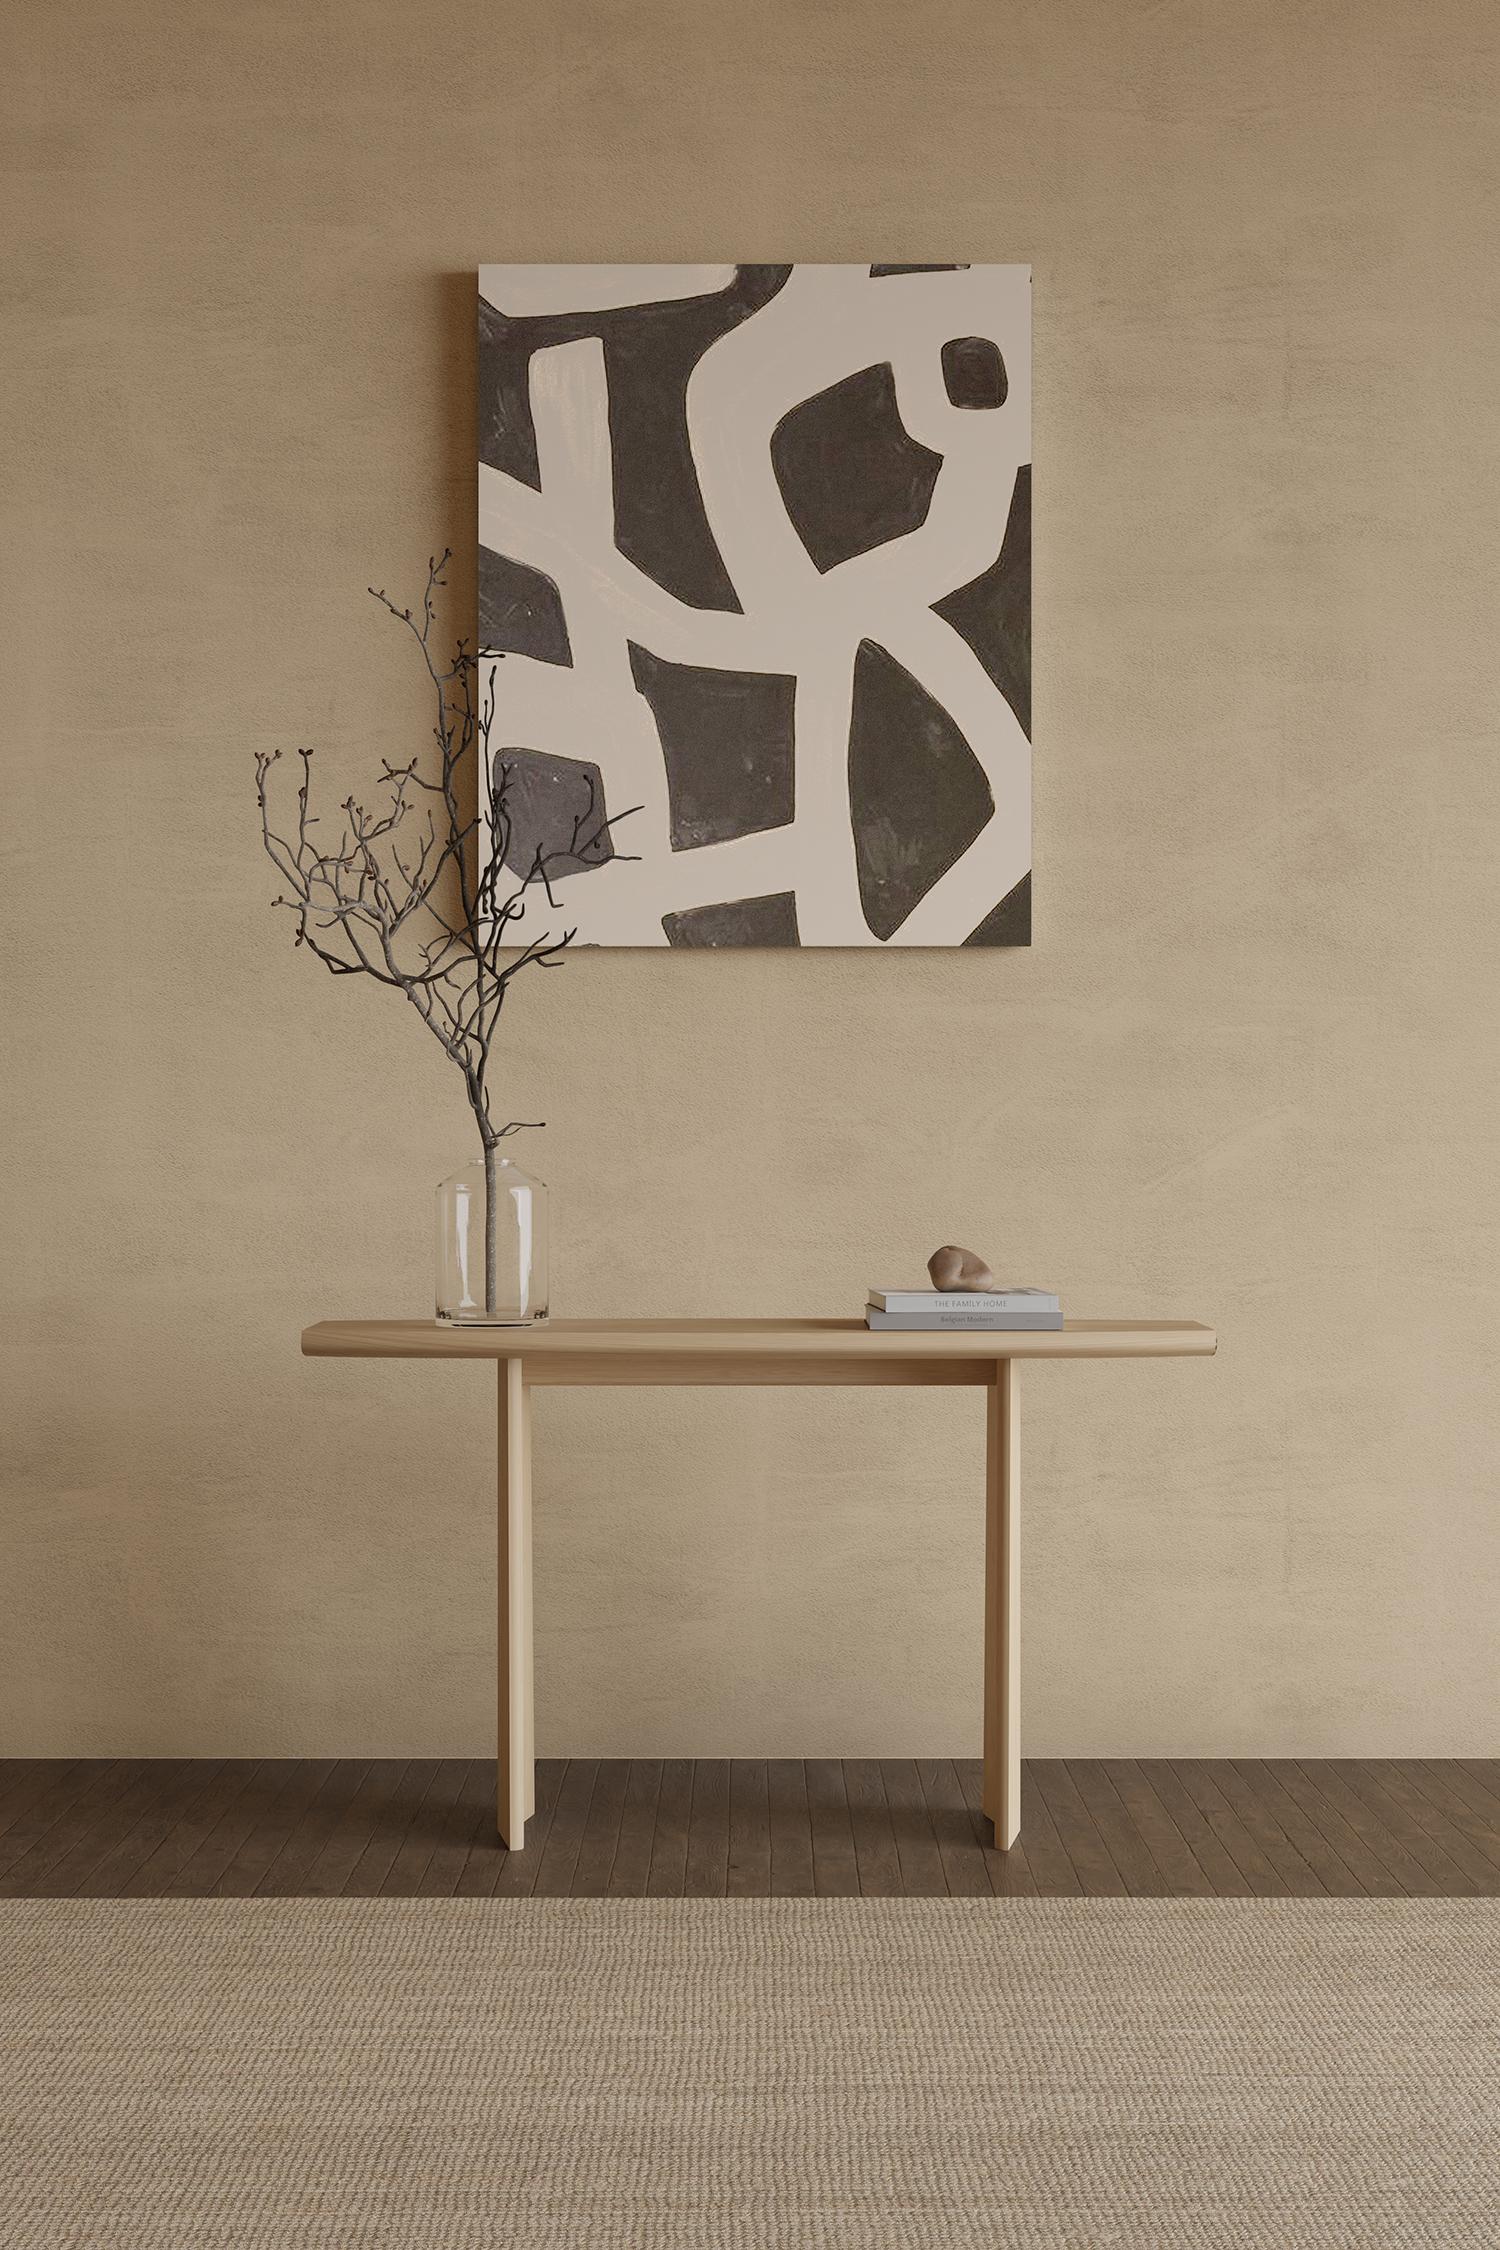 Peana anrichte aus eichenholz natur, konsolentisch von Joel Escalona

Peana, was im Englischen so viel wie Sockel bedeutet, ist eine Serie von Tischen und verschiedenen Oberflächen, die von der Idee inspiriert sind, würdige Möbelstücke zu schaffen,